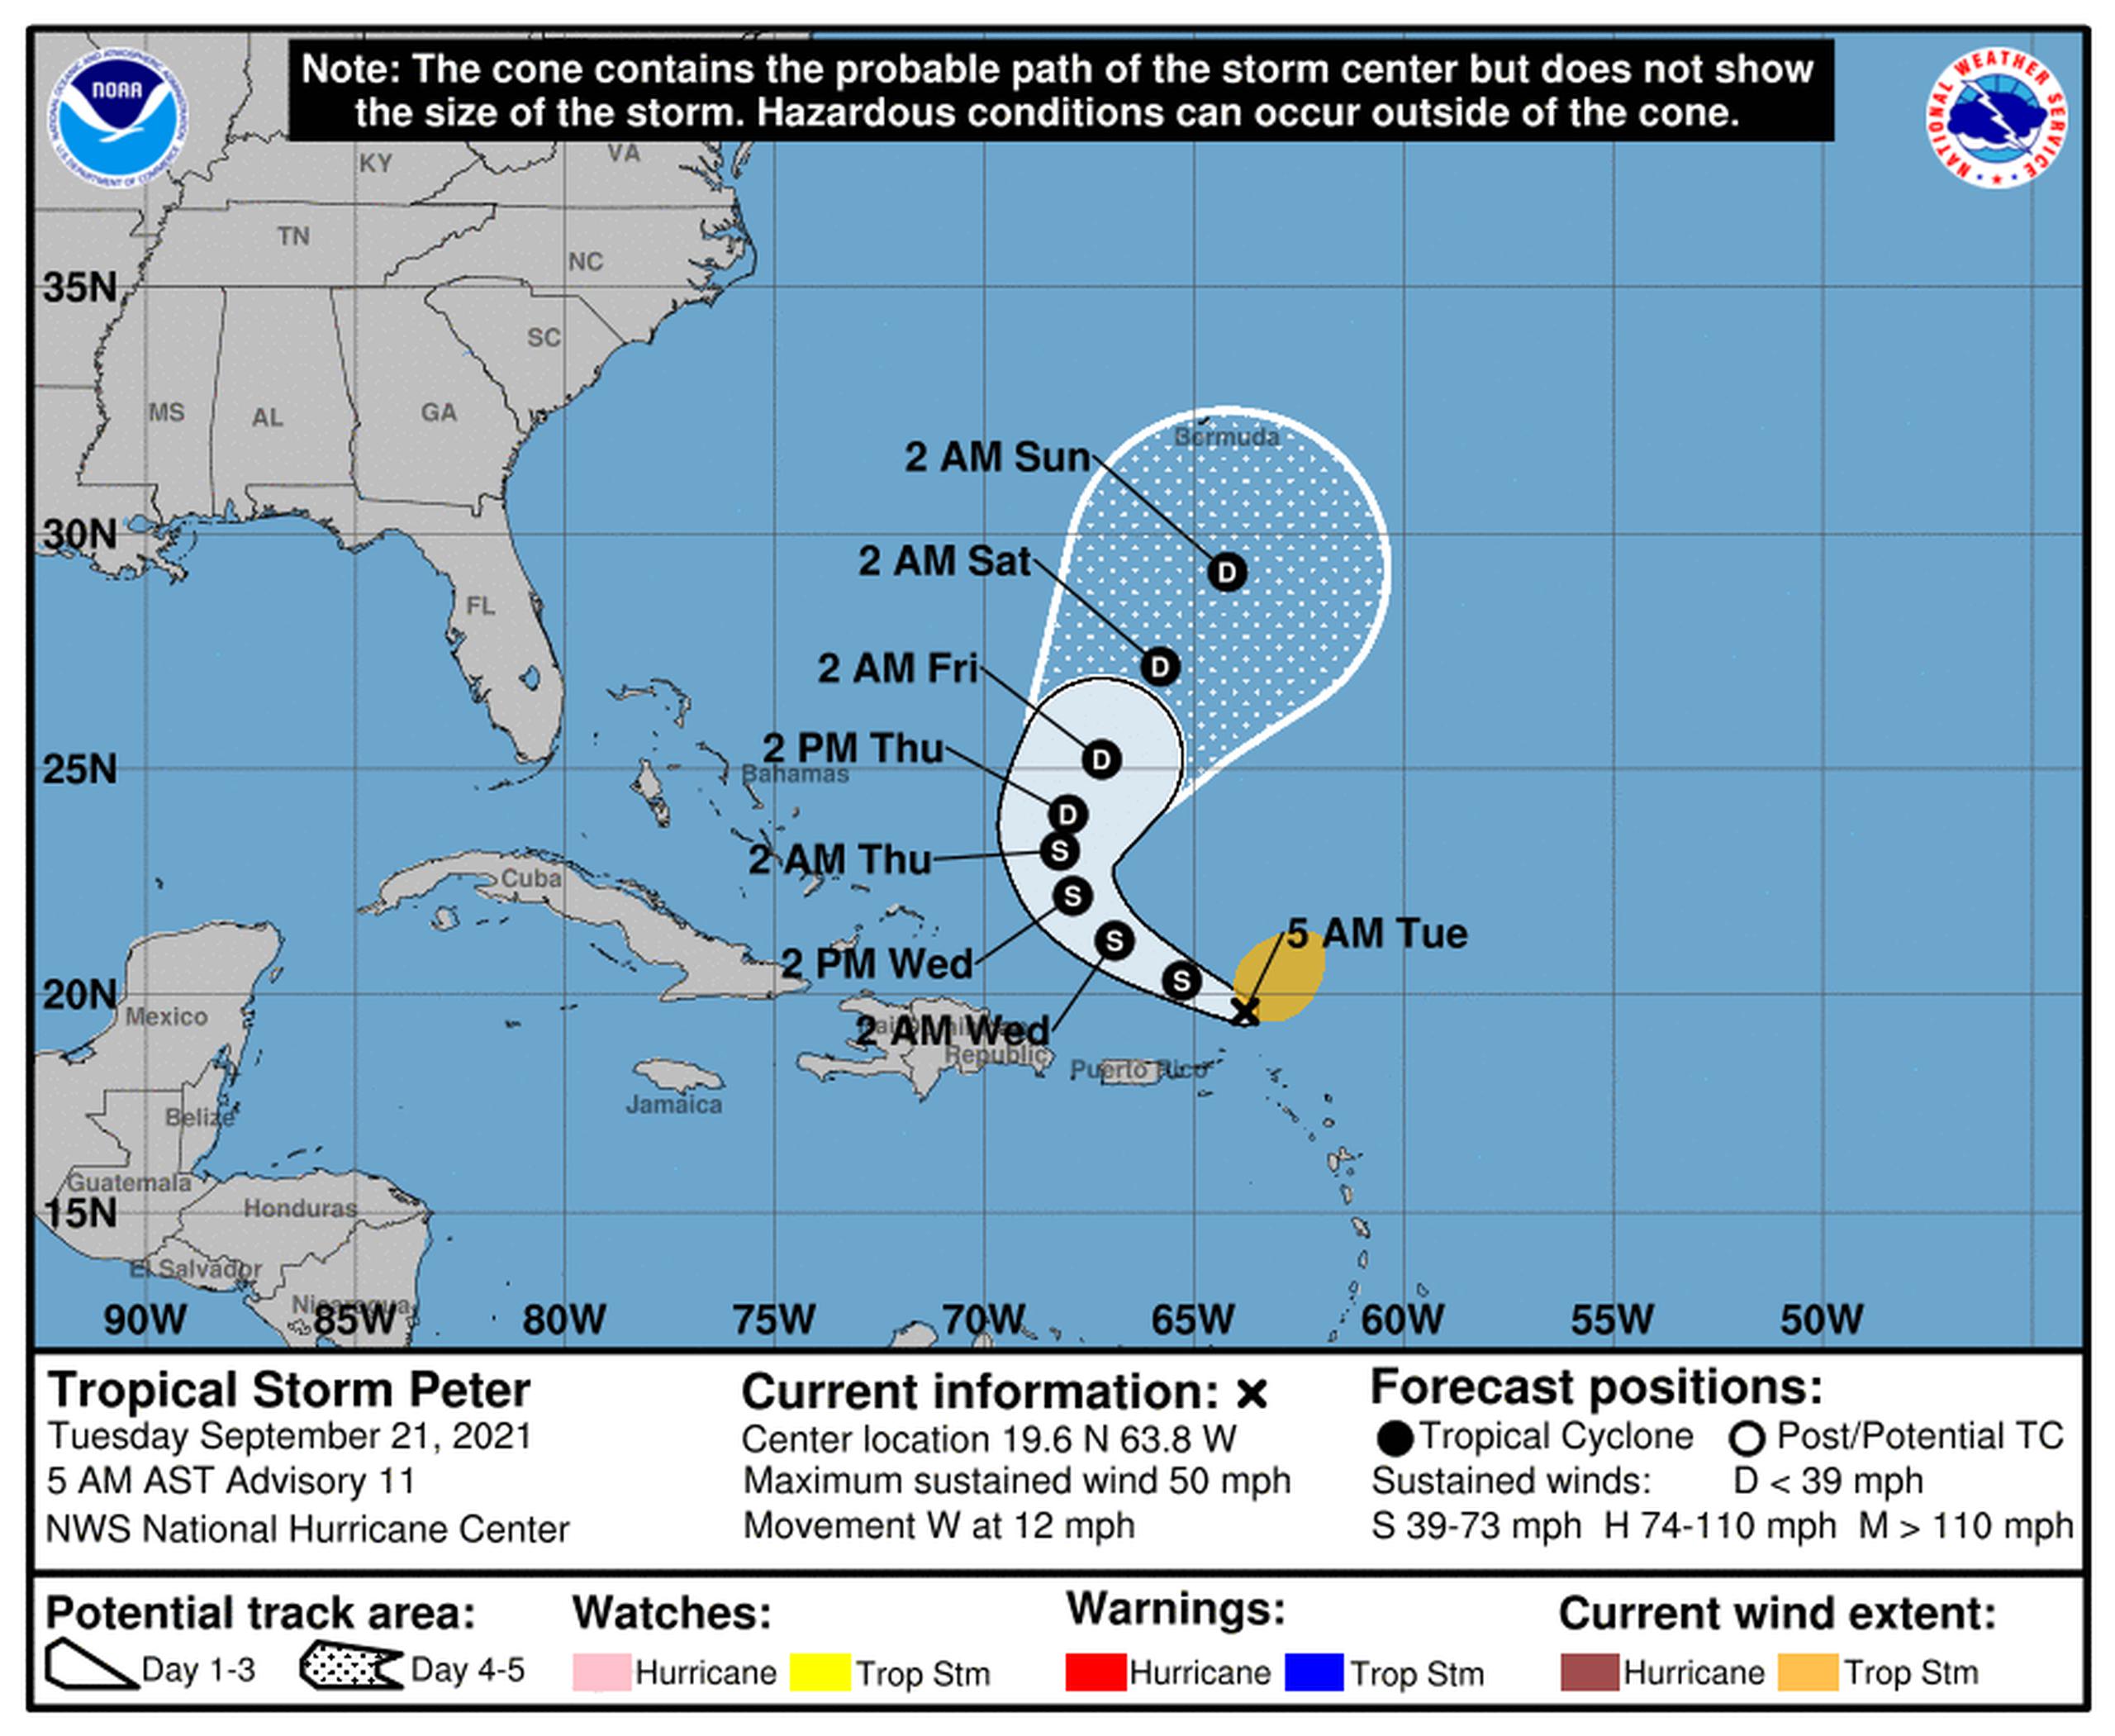 Pronóstico de la tormenta tropical Peter en la mañana del 21 de septiembre de 2021.